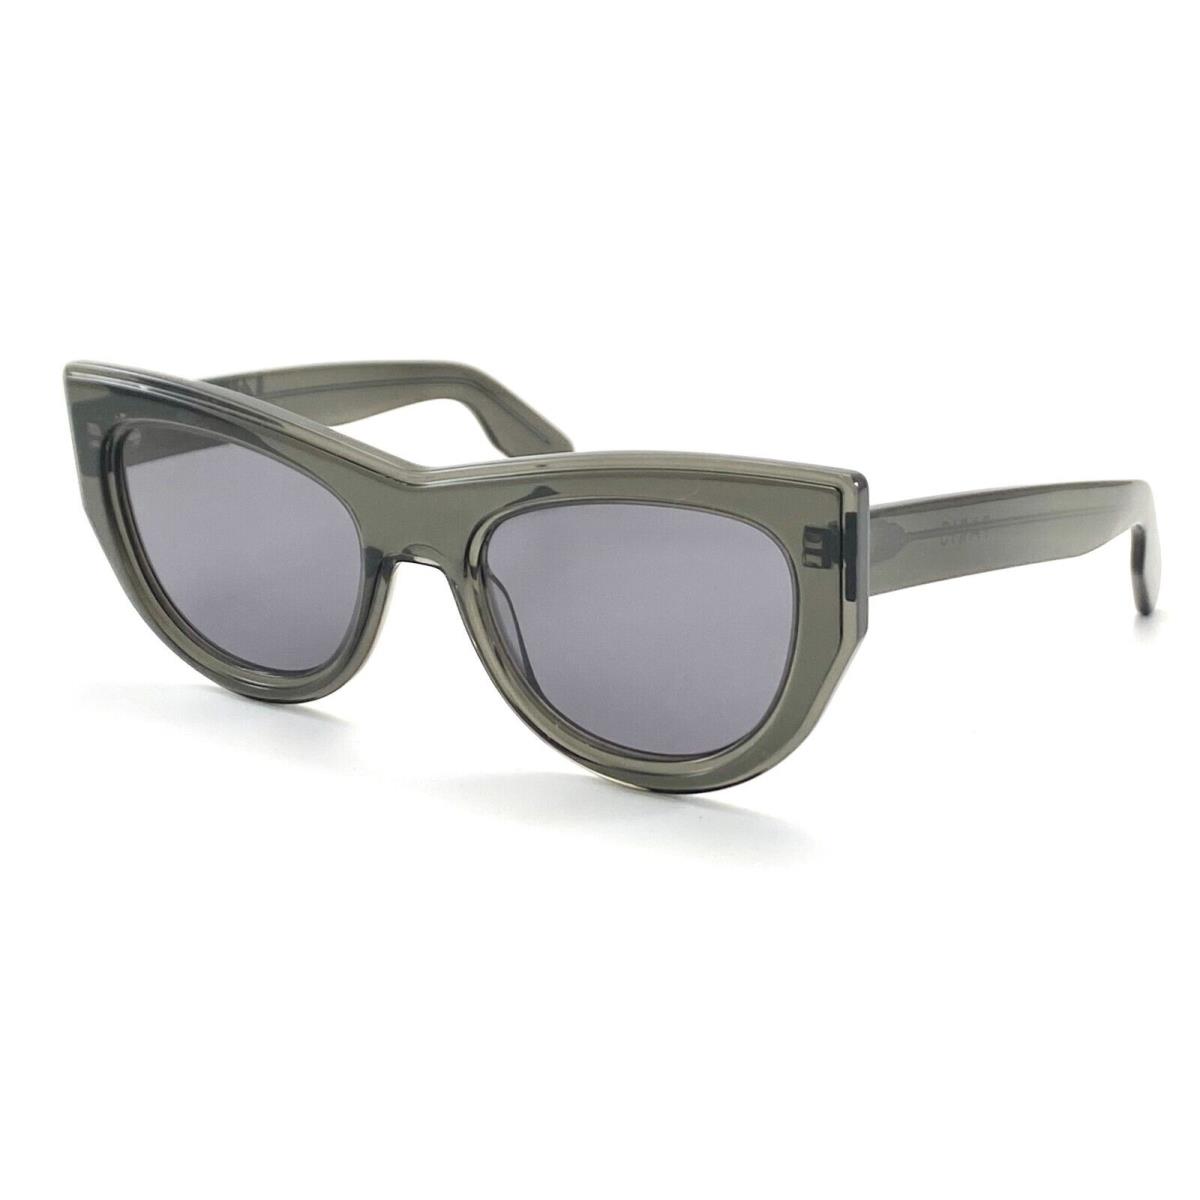 Kenzo Paris KZ40022I 05A Gray Sunglasses 53-21 150 W/case - Gray Frame, Gray Lens